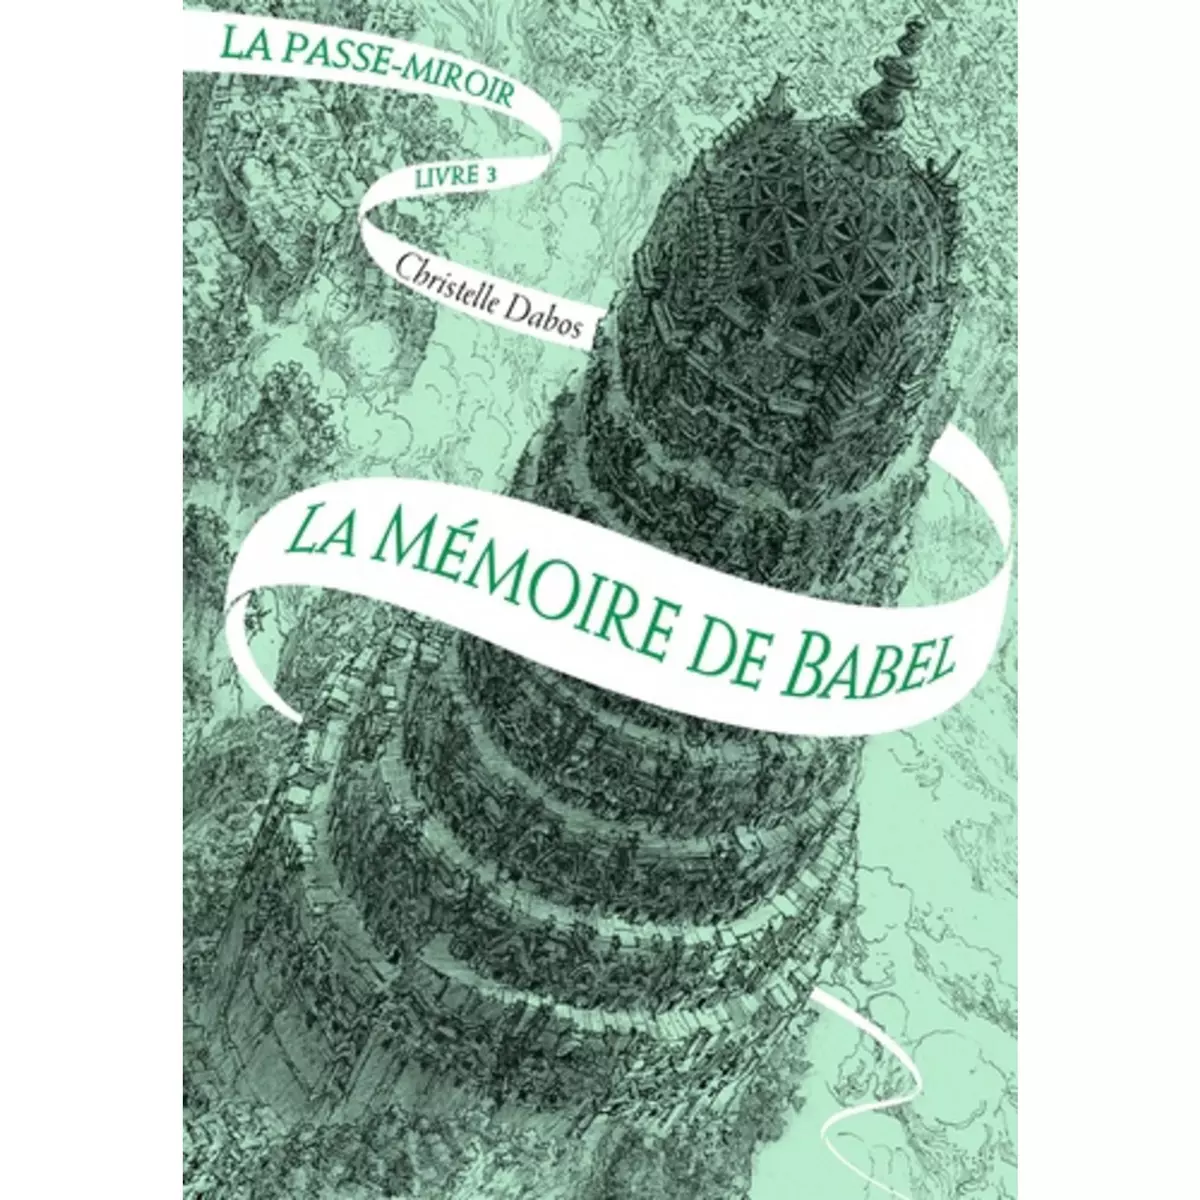  LA PASSE-MIROIR TOME 3 : LA MEMOIRE DE BABEL, Dabos Christelle